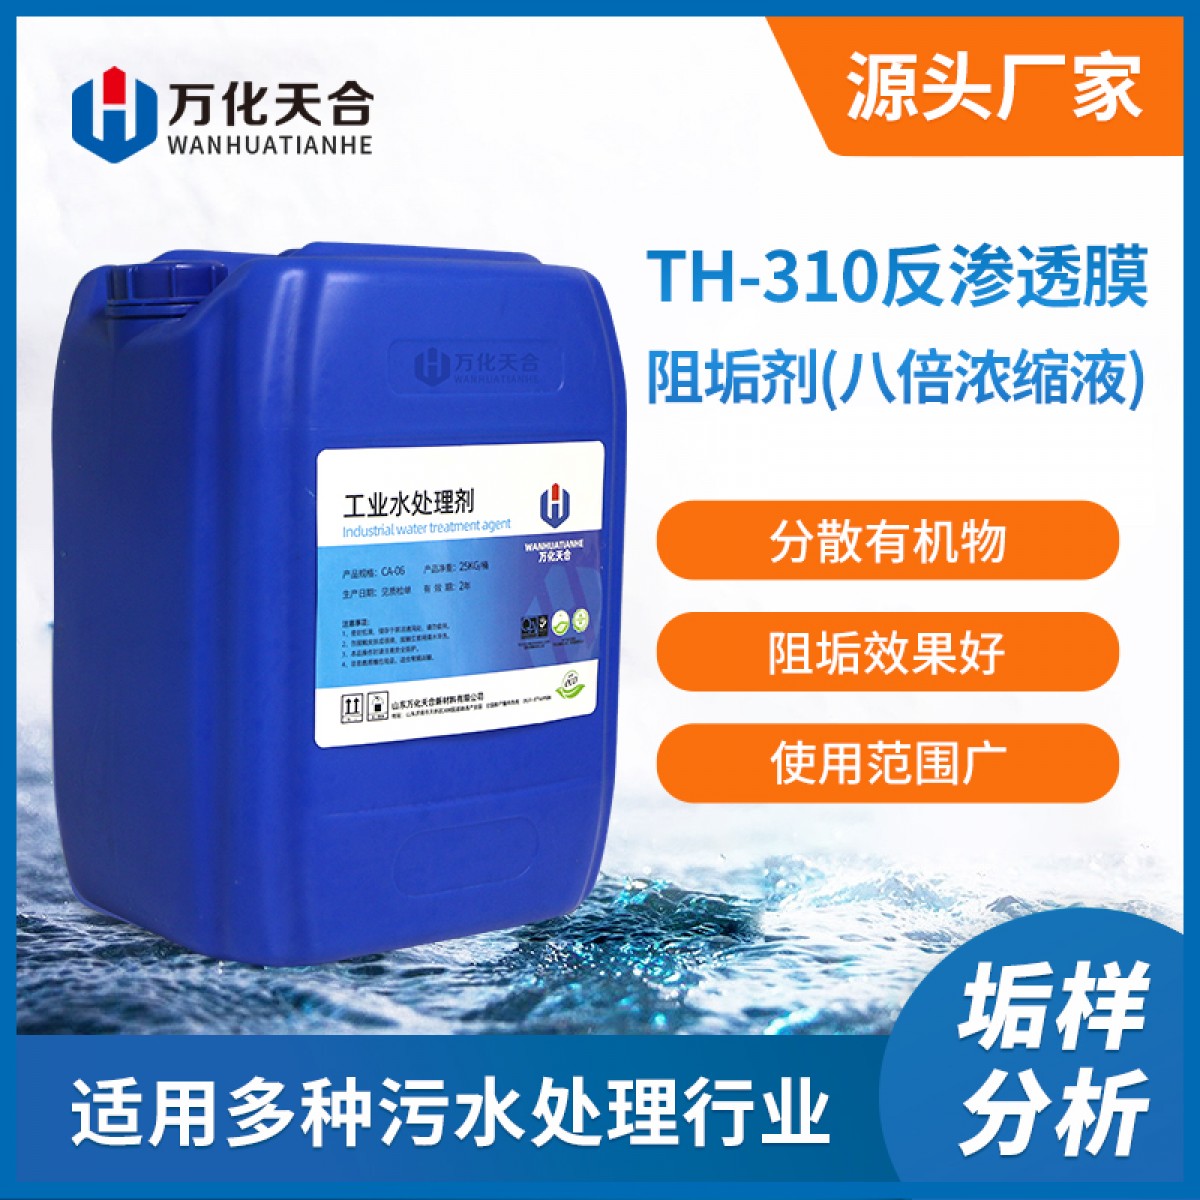 万化易购反渗透膜阻垢剂(八倍浓缩液)TH-310防止RO膜结垢纯水净水设备水处理阻垢剂